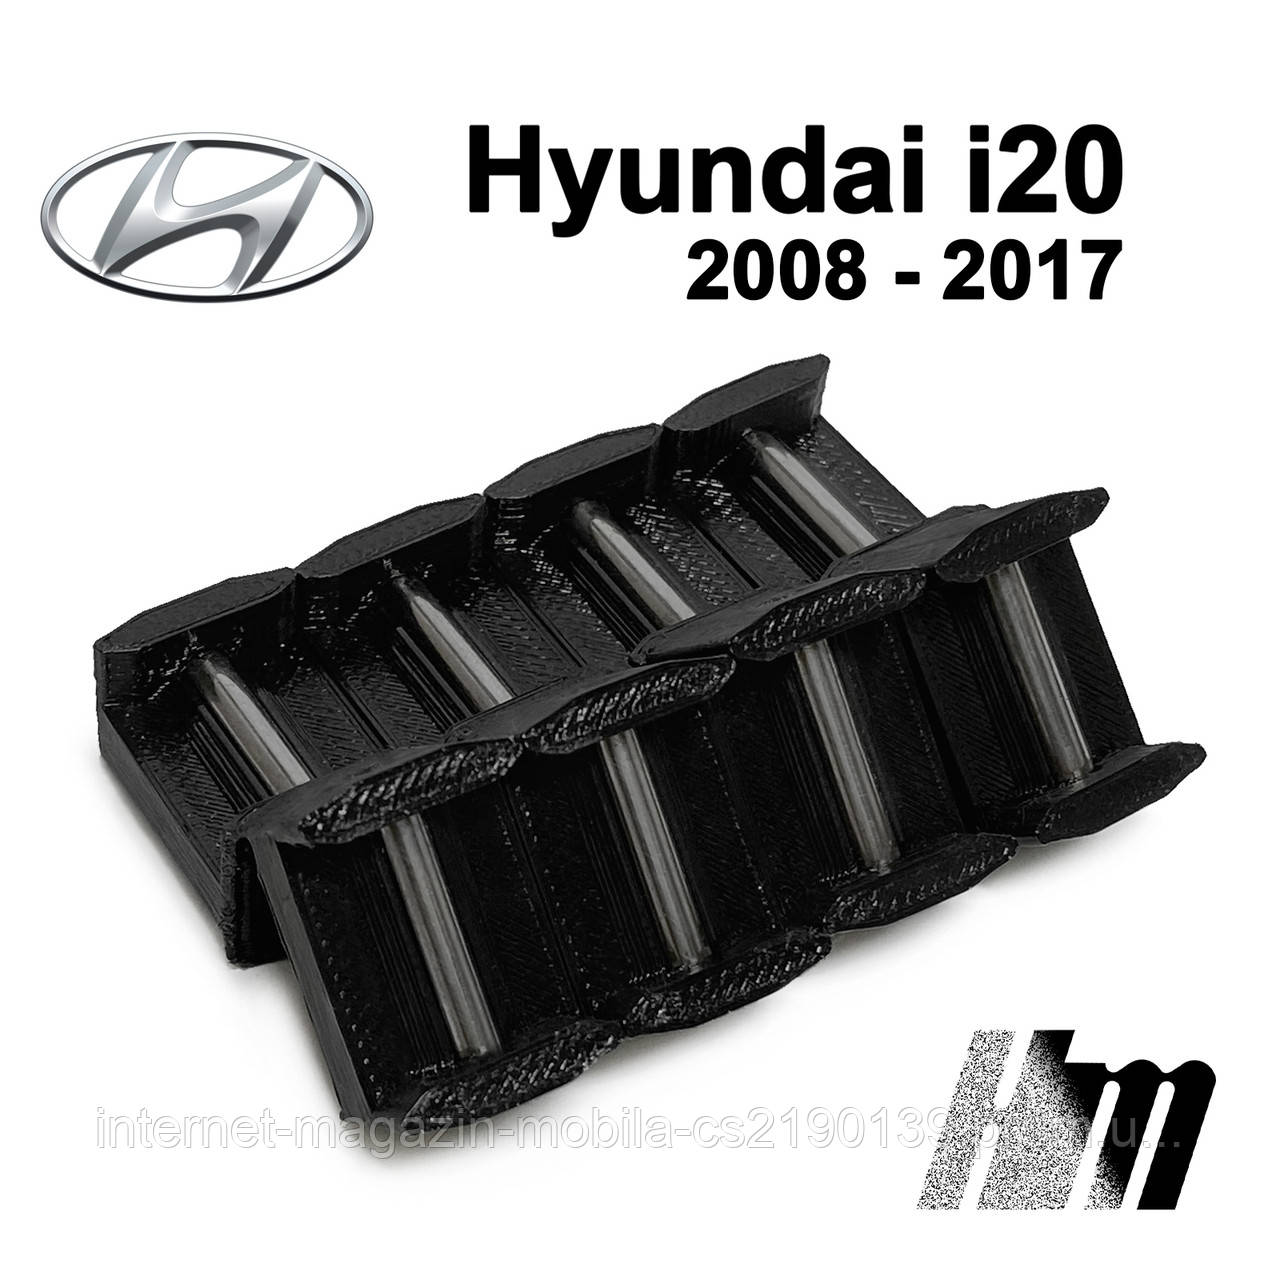 Втулка обмежувача дверей, фіксатор, вкладки обмежувачів дверей Hyundai i20, 2008 — 2017